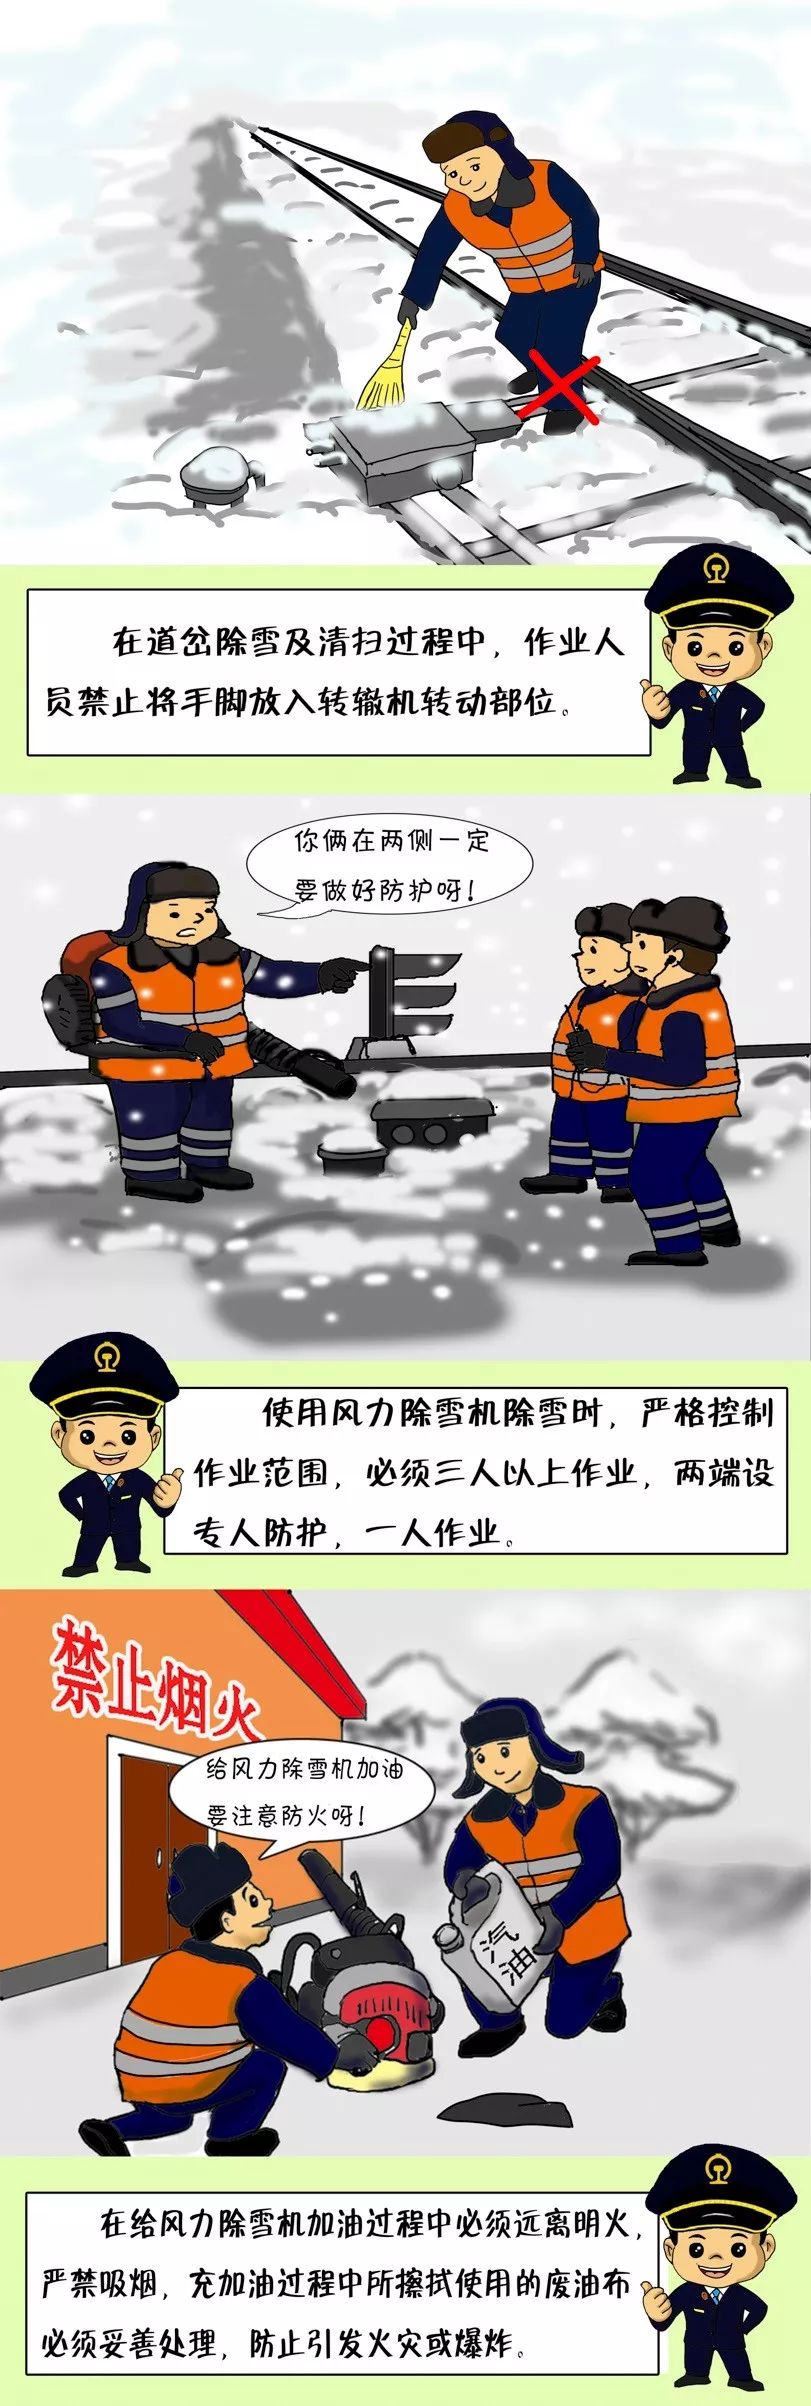 铁路冬季安全漫画电务篇